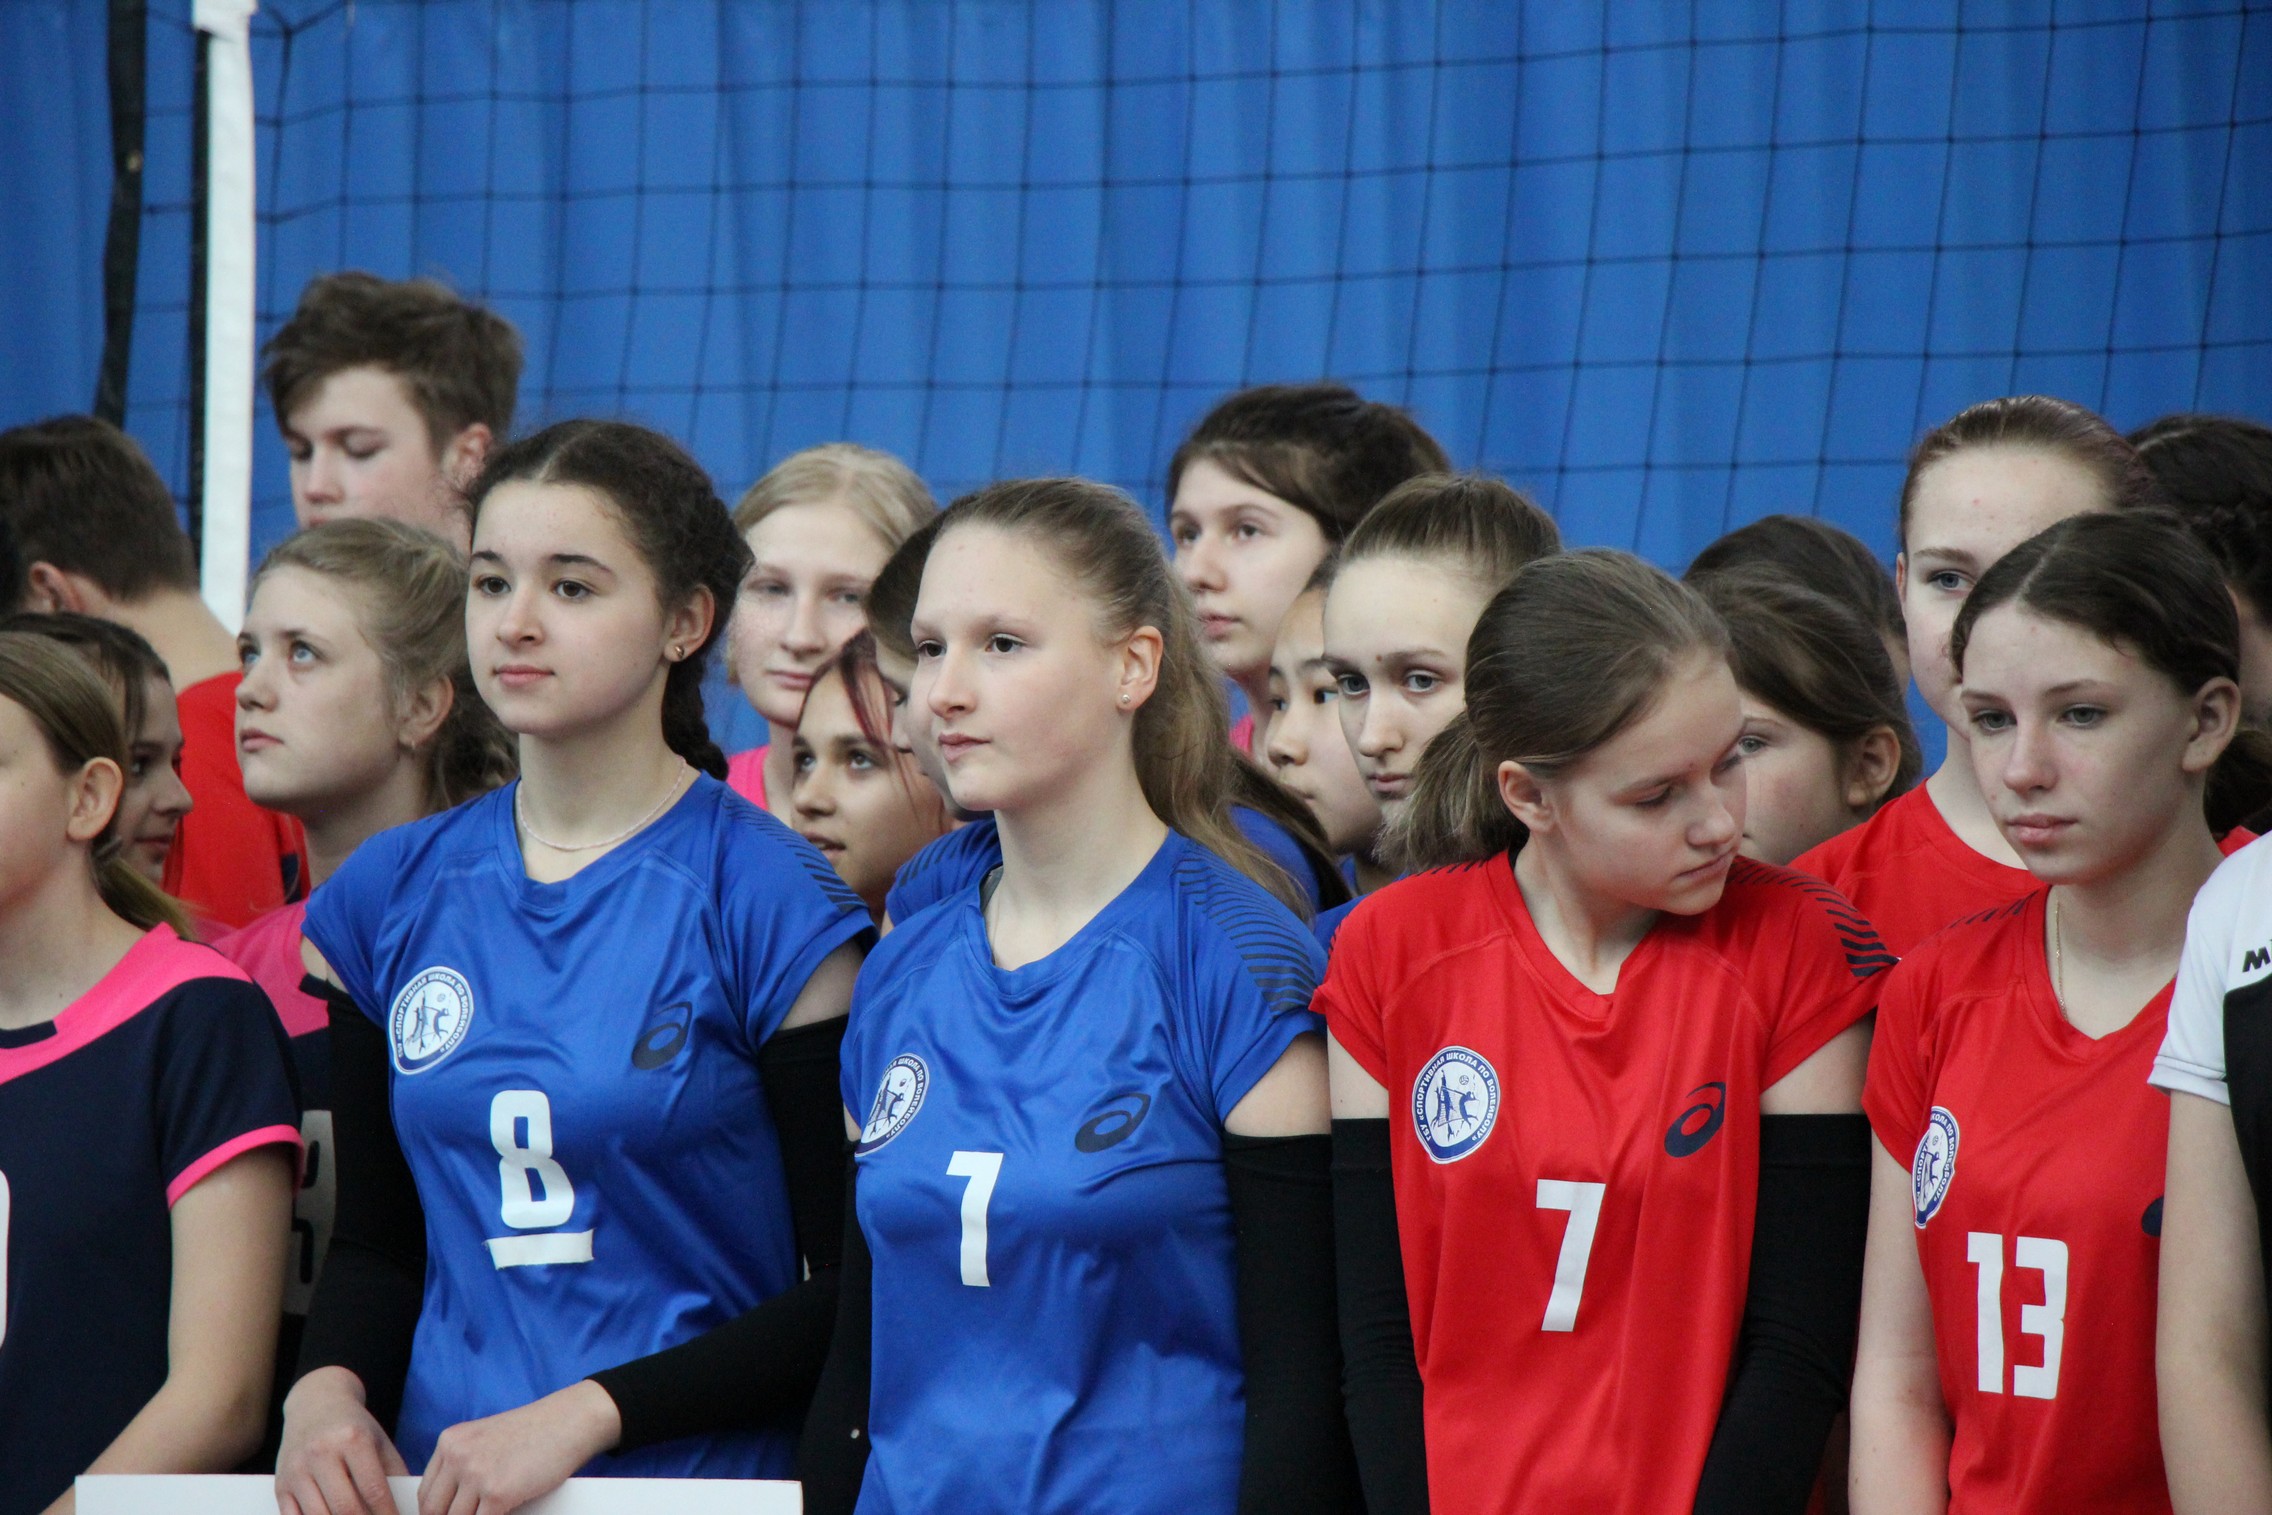 Первенство области по волейболу среди юношей и девушек 2009-2010 г.р.